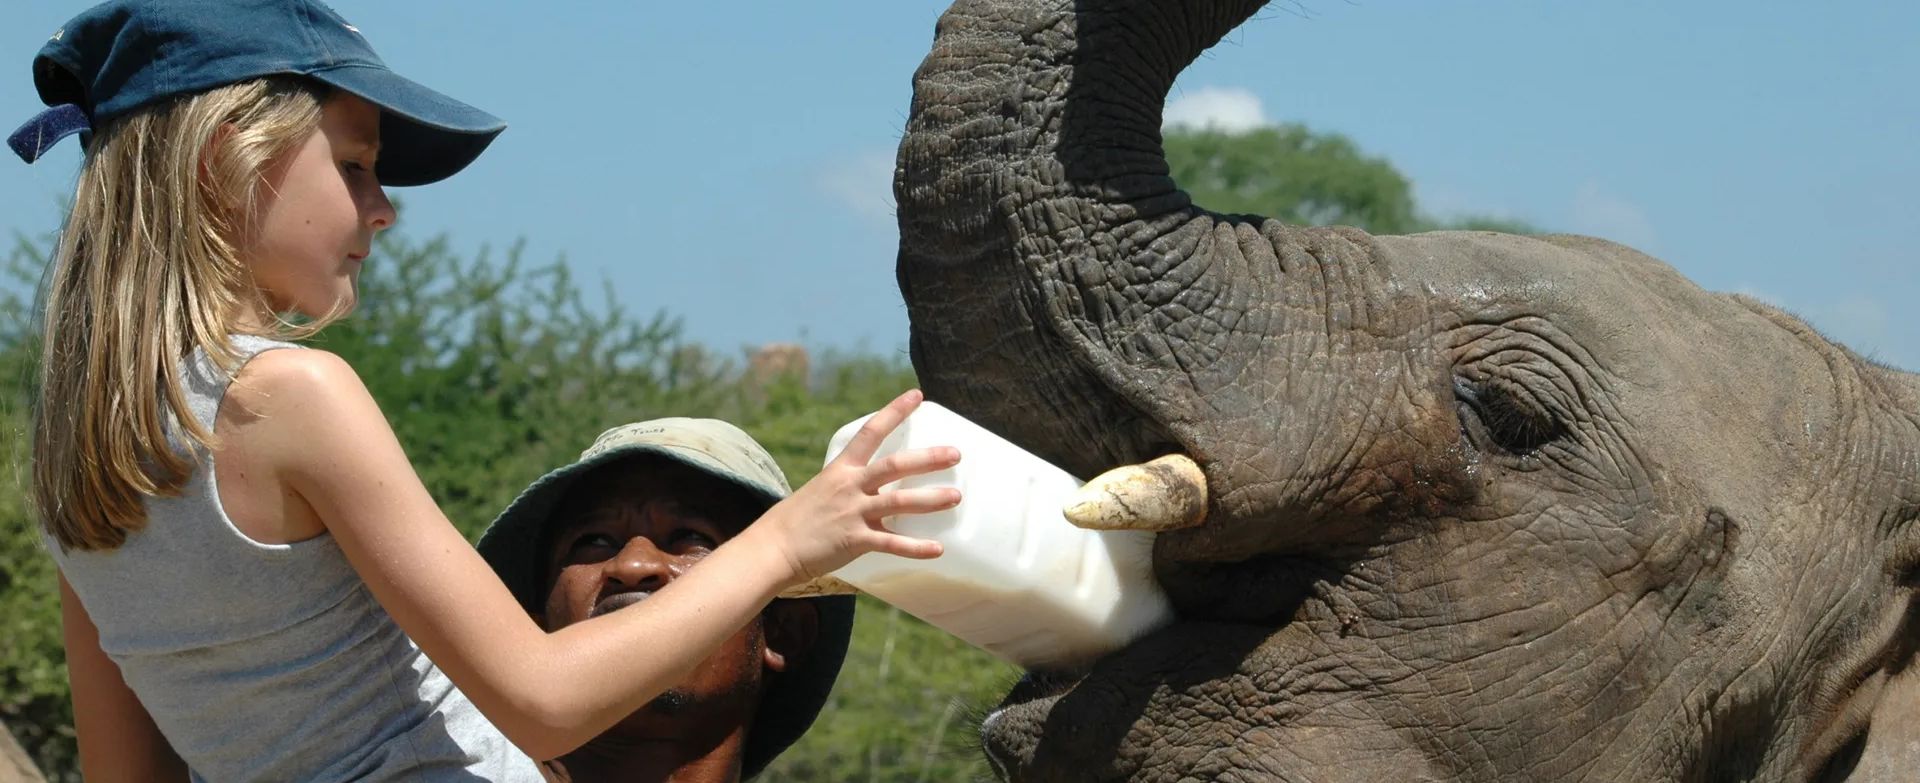 stramt Uafhængighed gå på indkøb Elefanten - Afrikas Horisonter